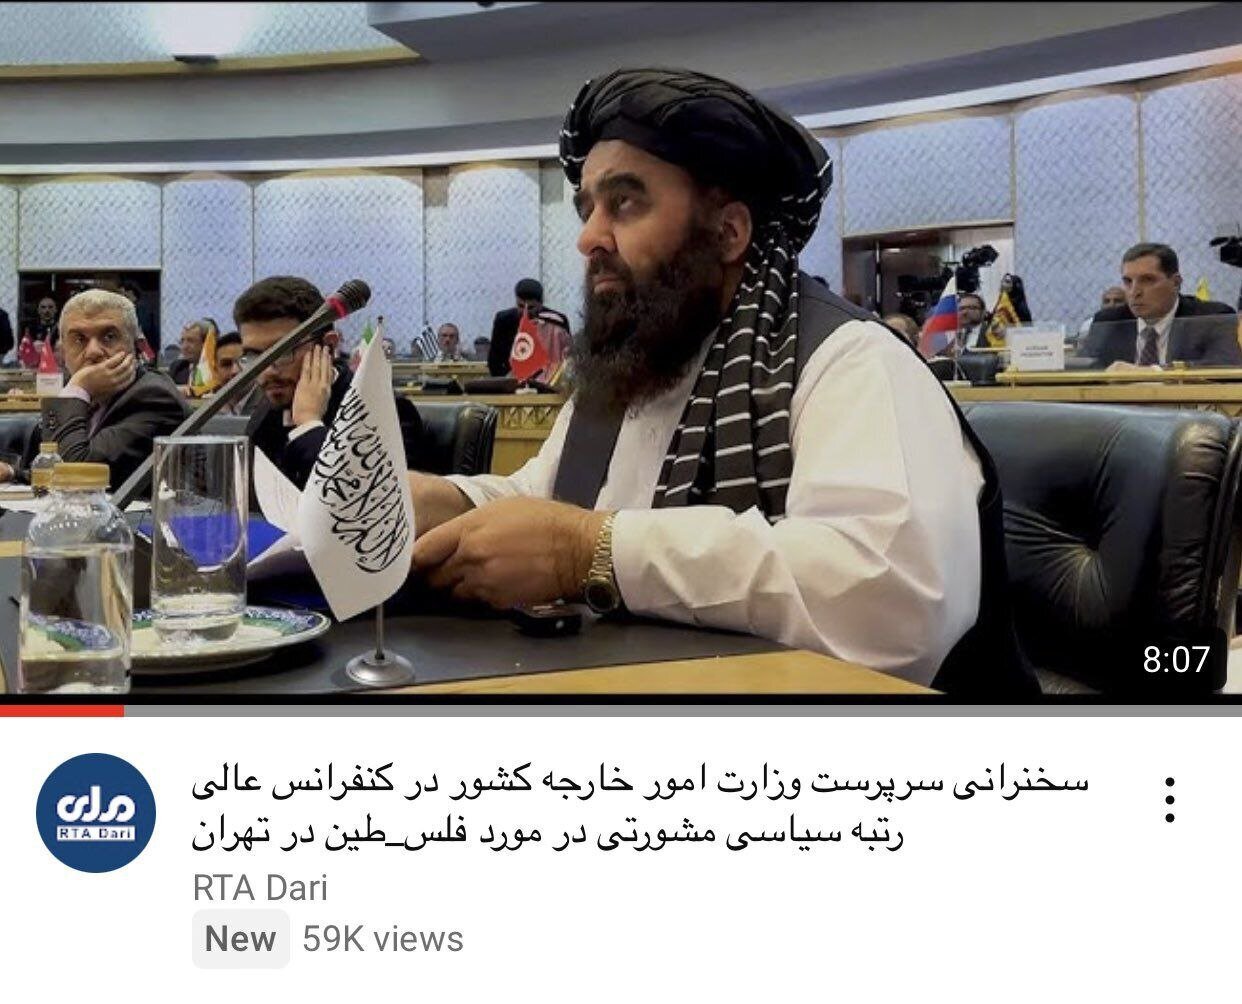 جنجال پرچم فتوشاپ شده طالبان در تهران + عکس | تصاویر واقعی دیدارهای تهران و آنچه تلویزیون طالبان نشان داد